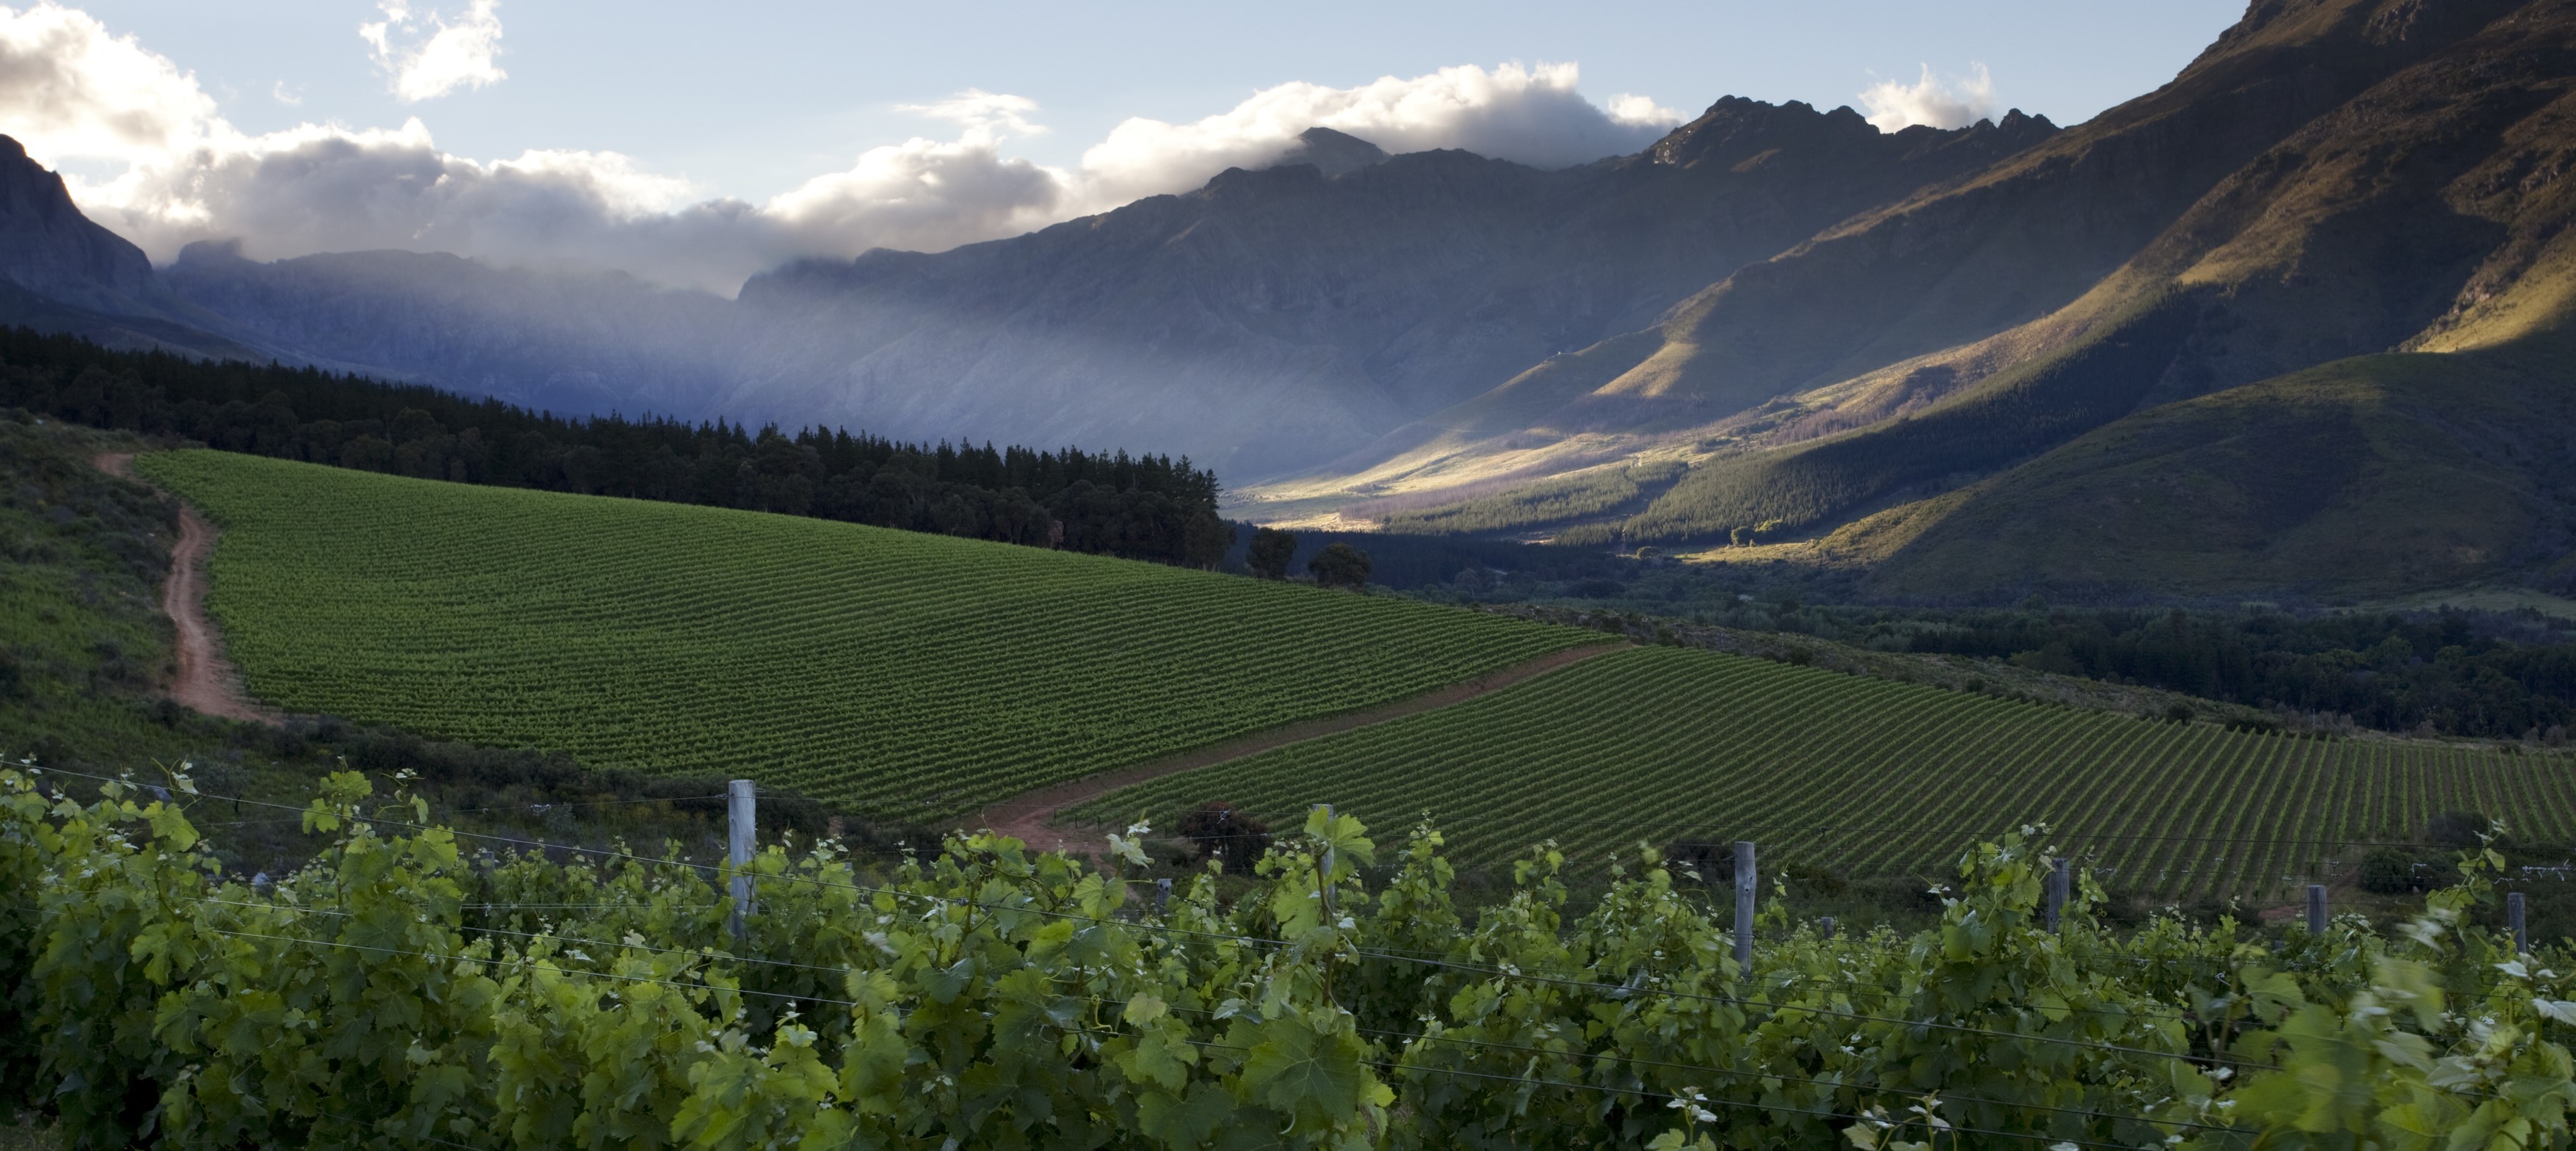 vineyards overlooking rolling hills